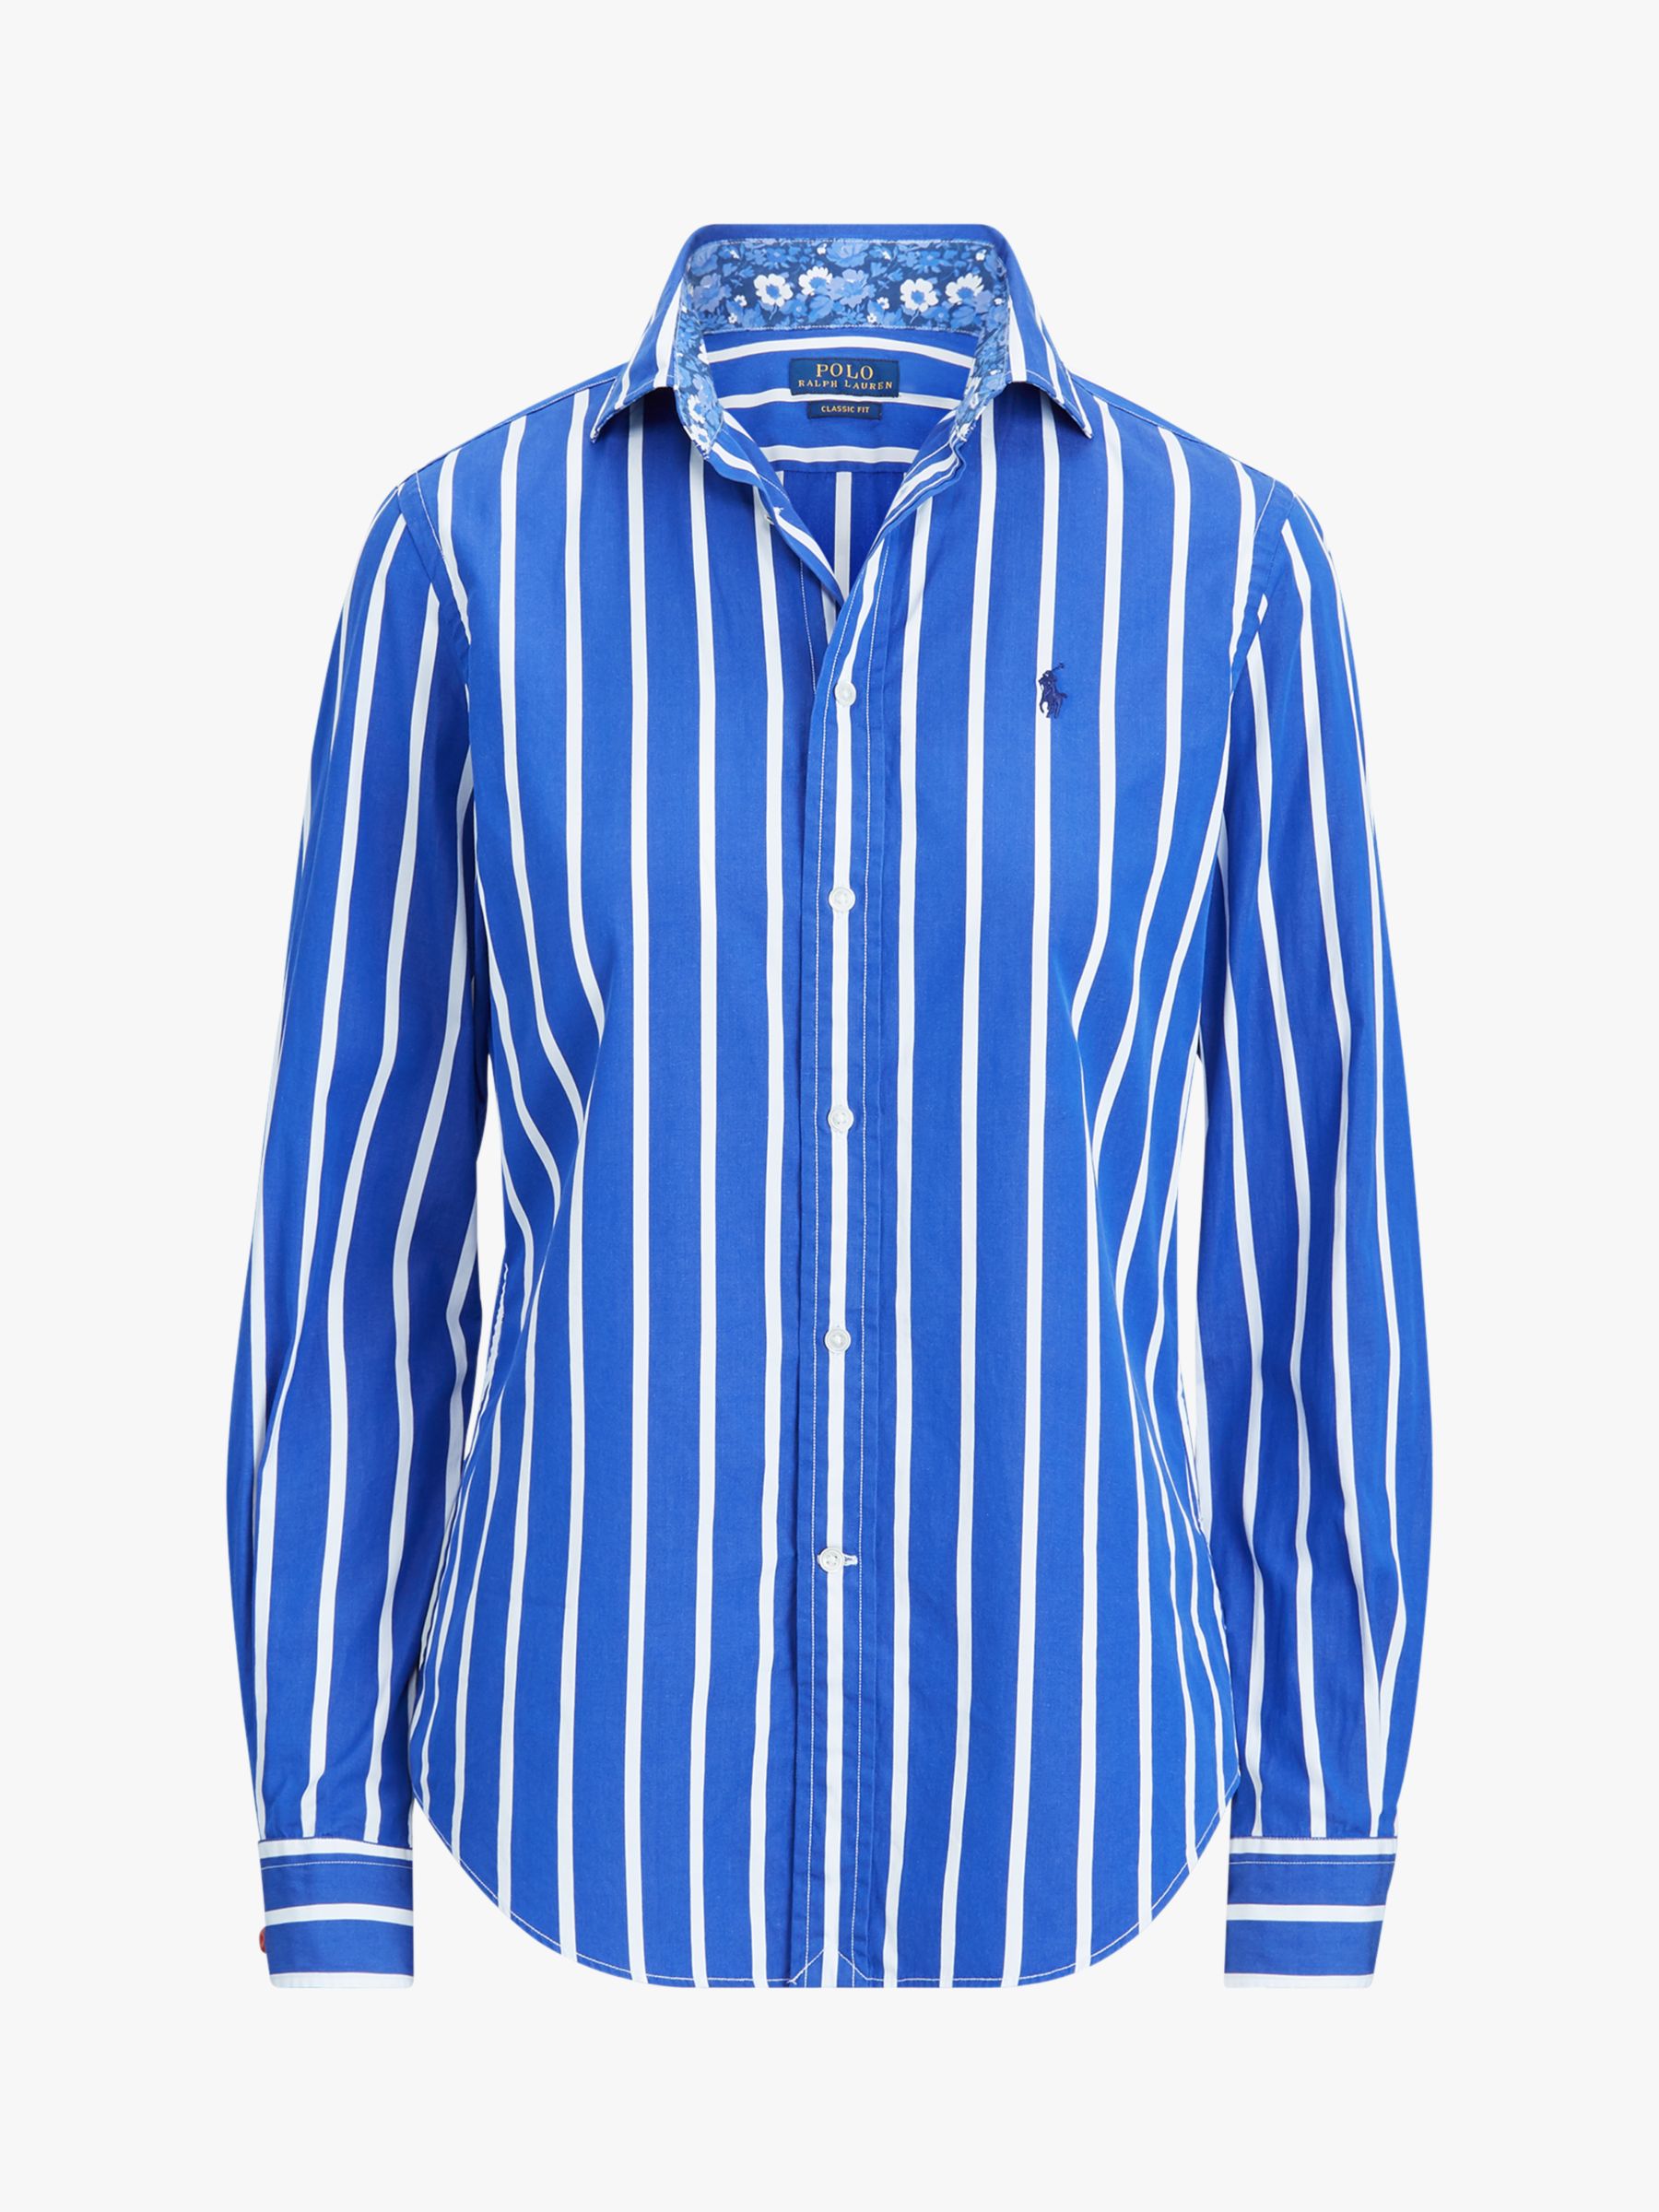 Polo Ralph Lauren Georgia Stripe Shirt, Blue/White